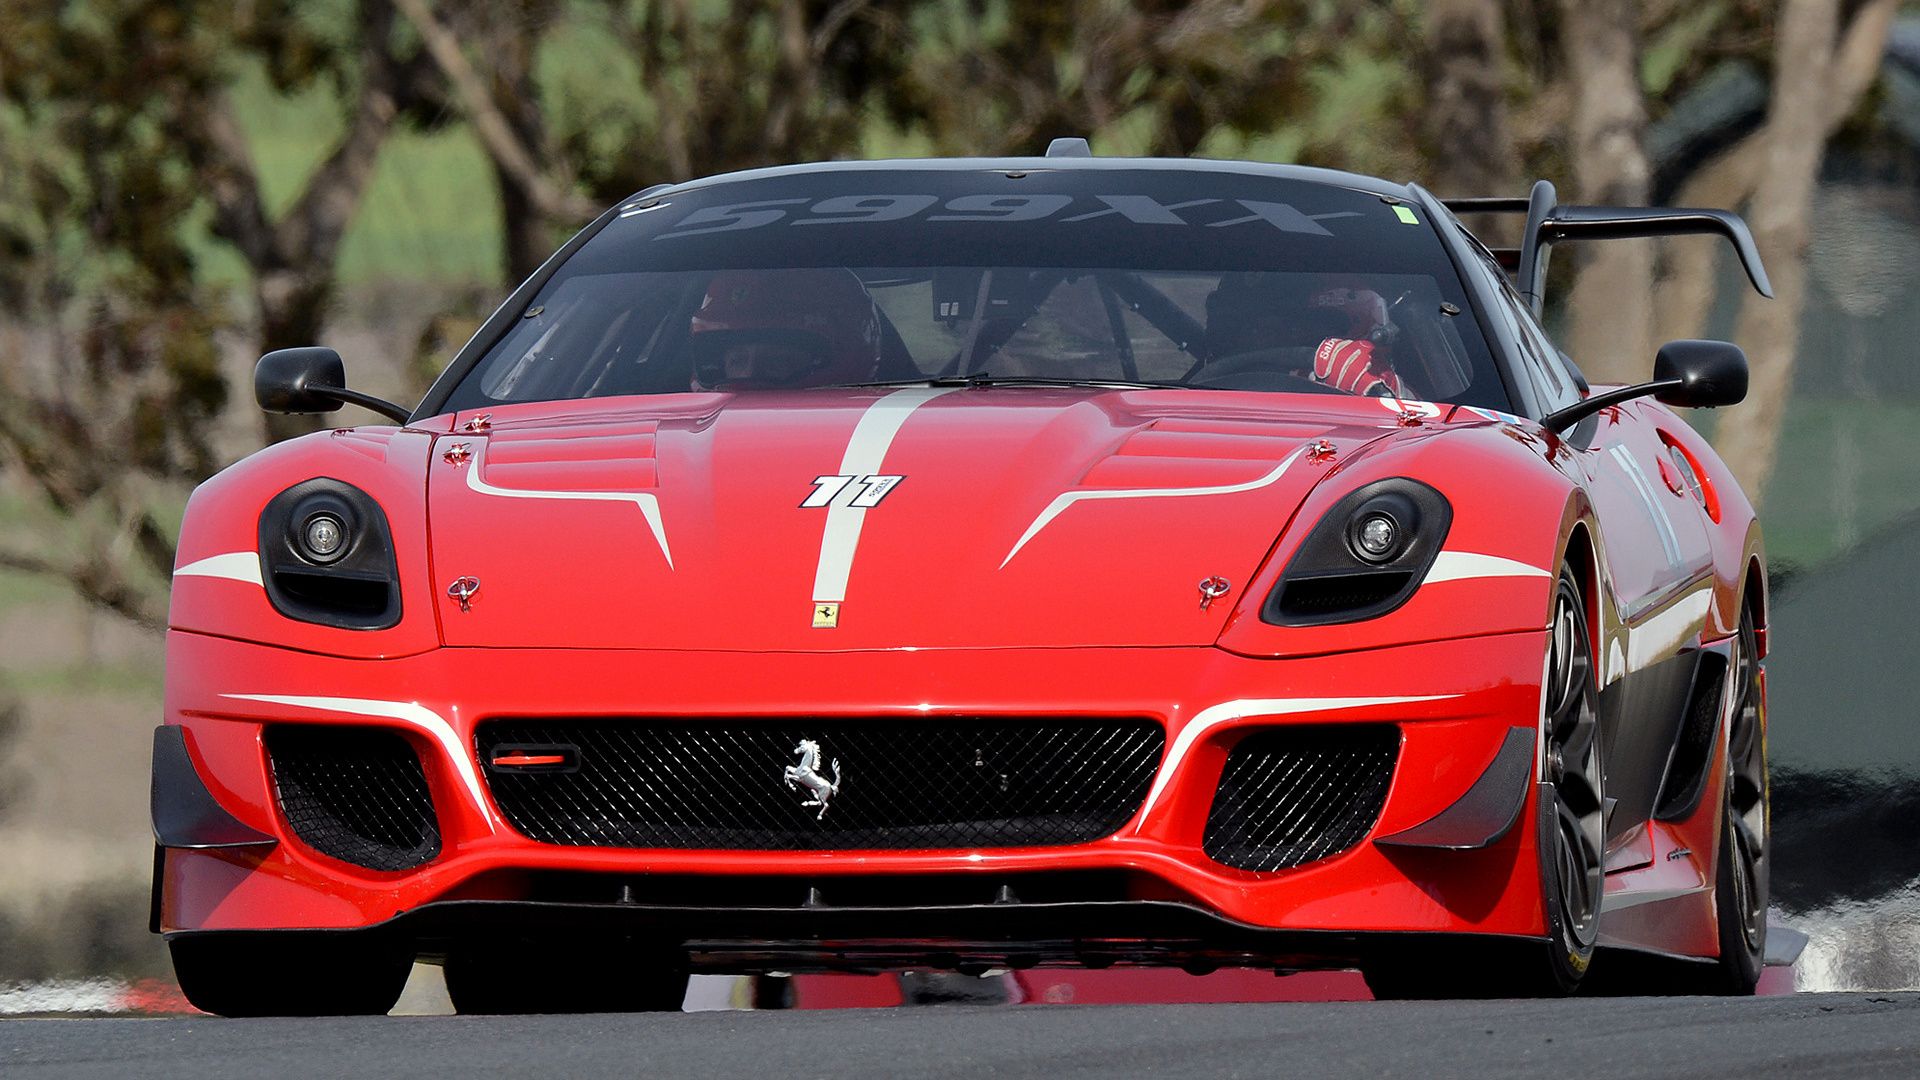 Ferrari 599XX Evoluzione and HD Image